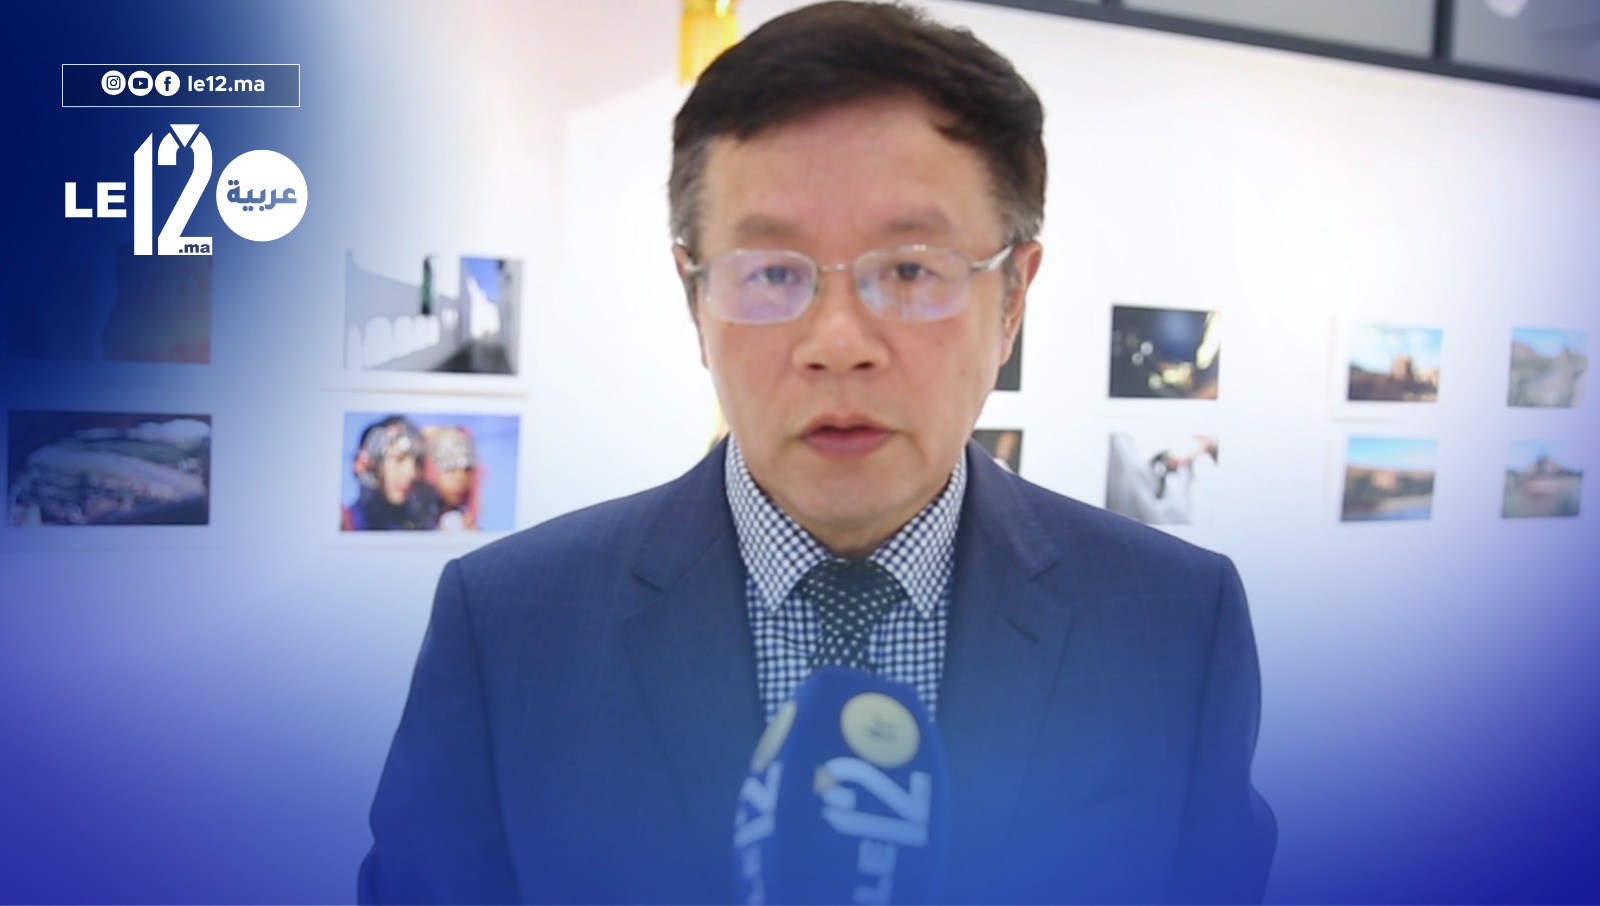 سفير الصين يفتتح معرضا للتصوير الفوتوغرافي في الرباط ( فيديو)